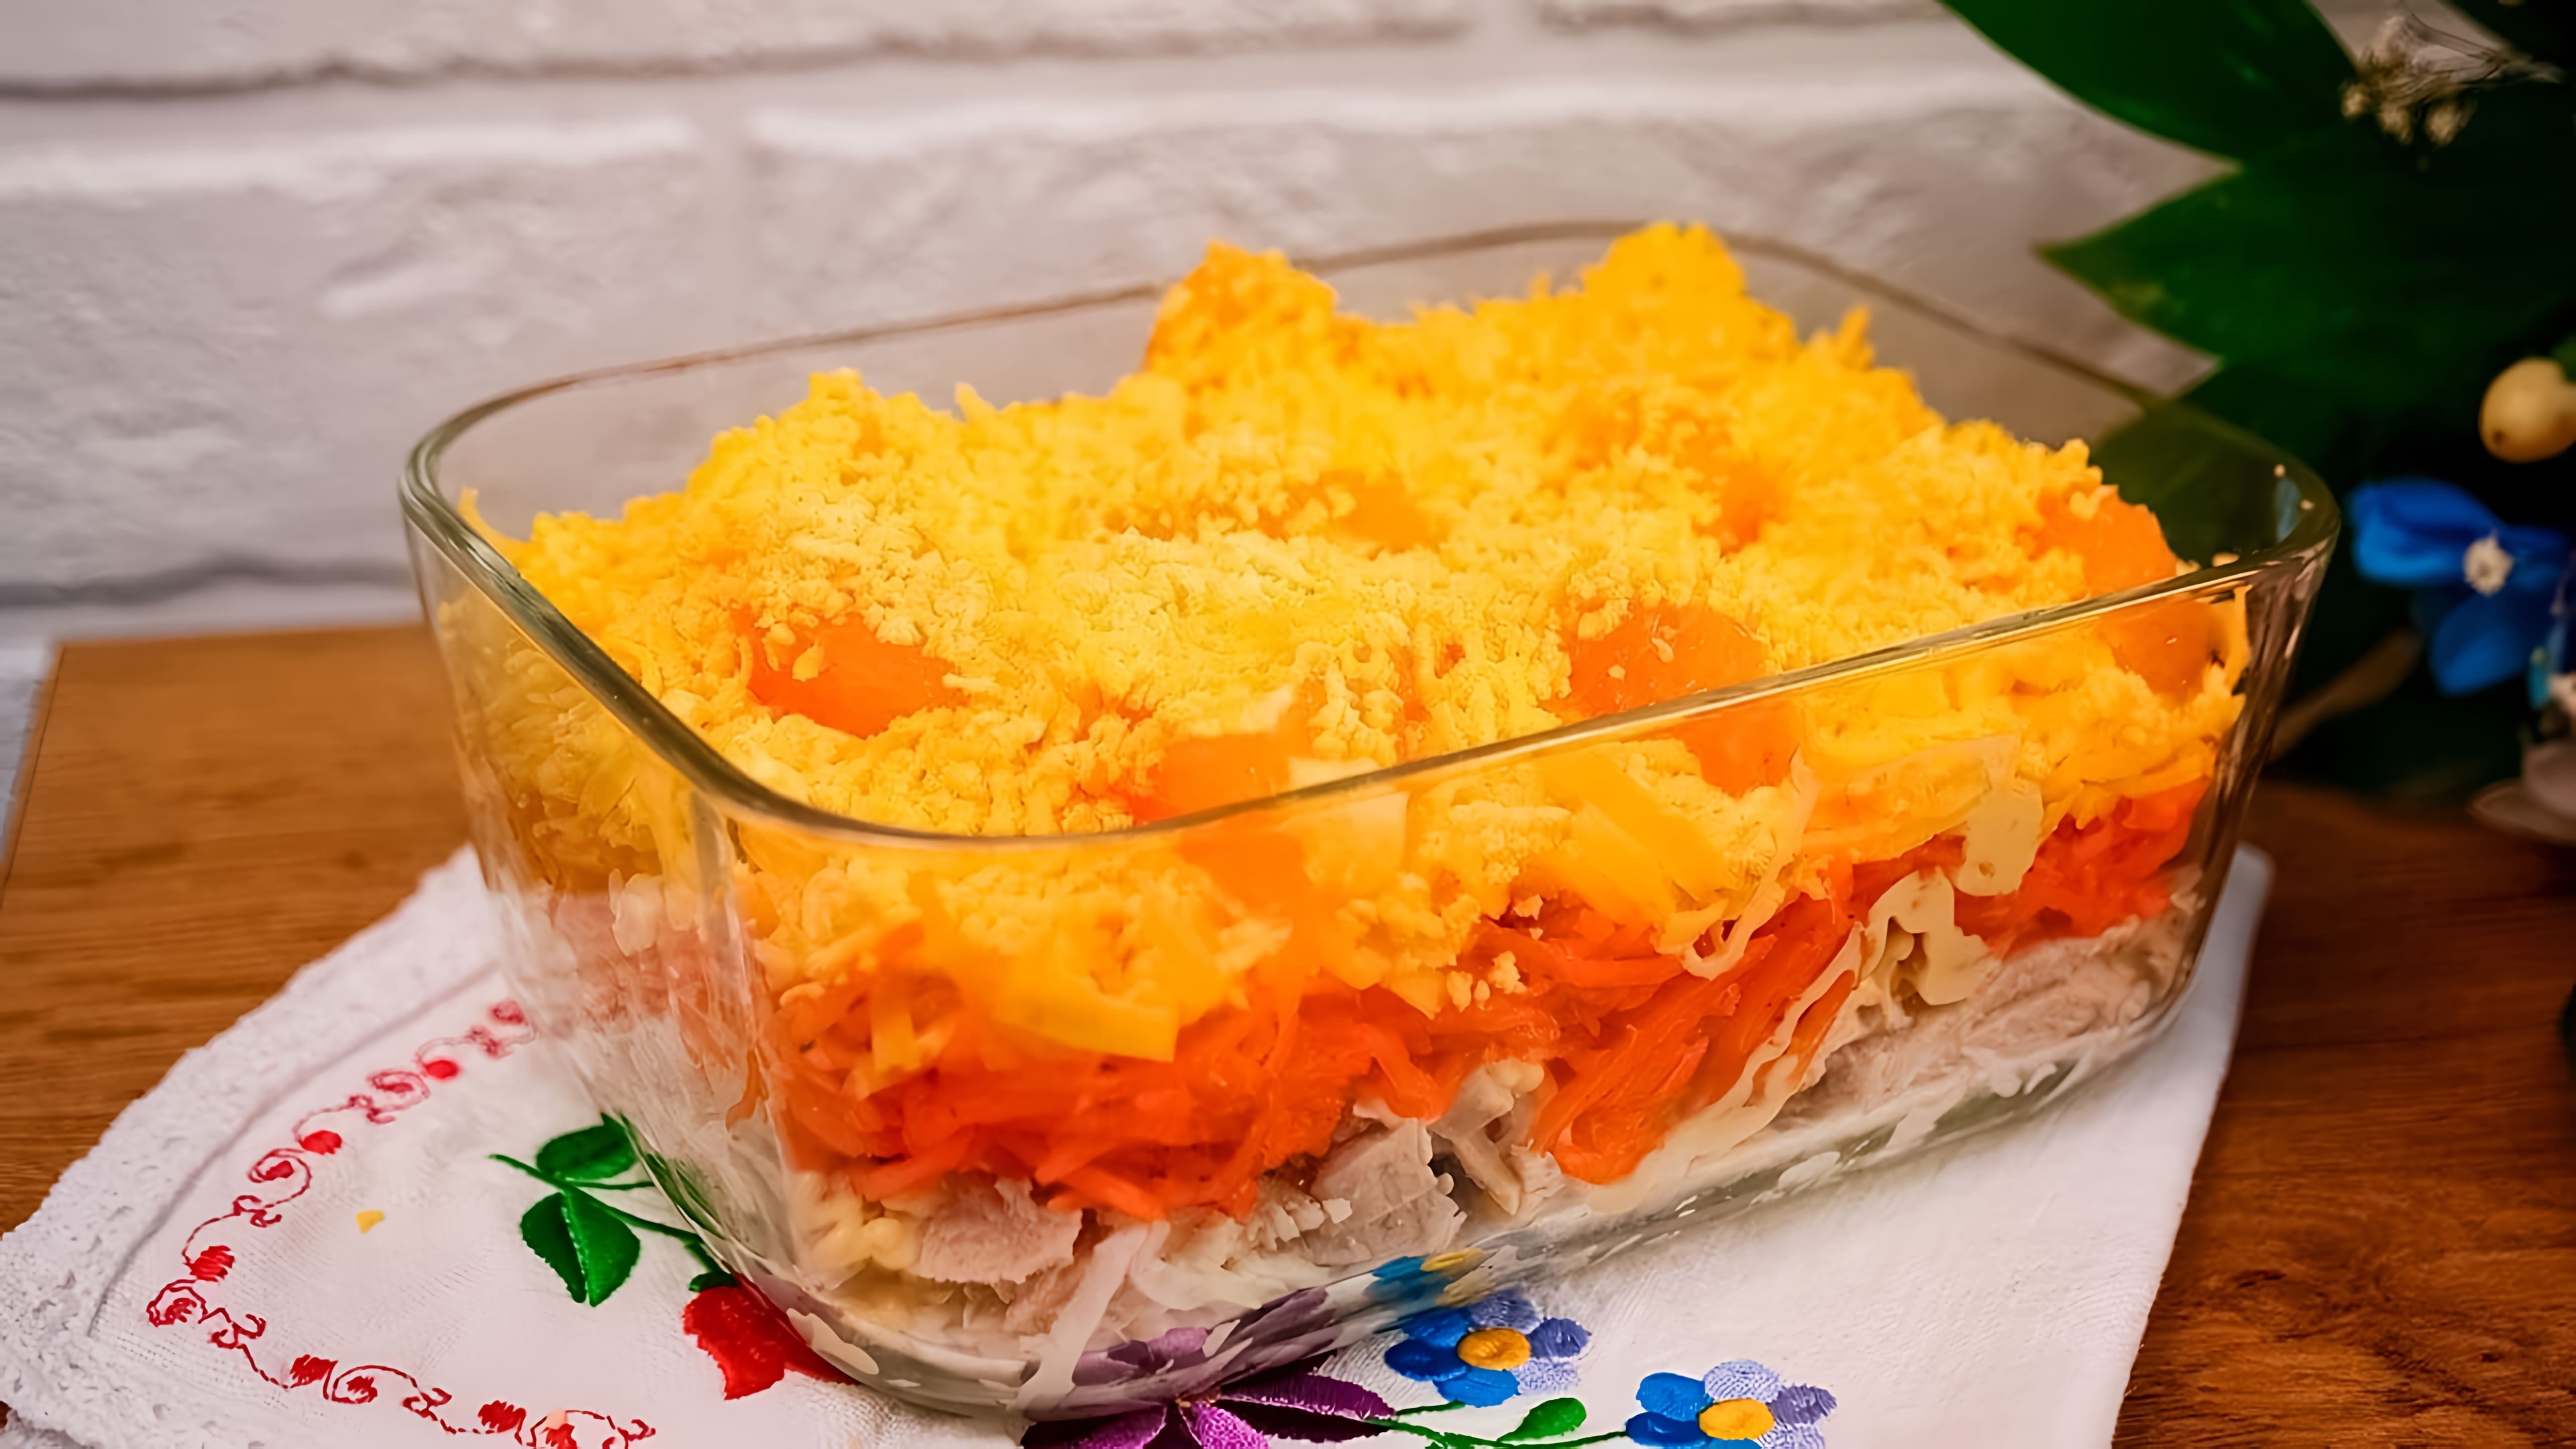 В этом видео демонстрируется рецепт вкусного салата "Озорной цыпленок", который можно приготовить на праздничный стол